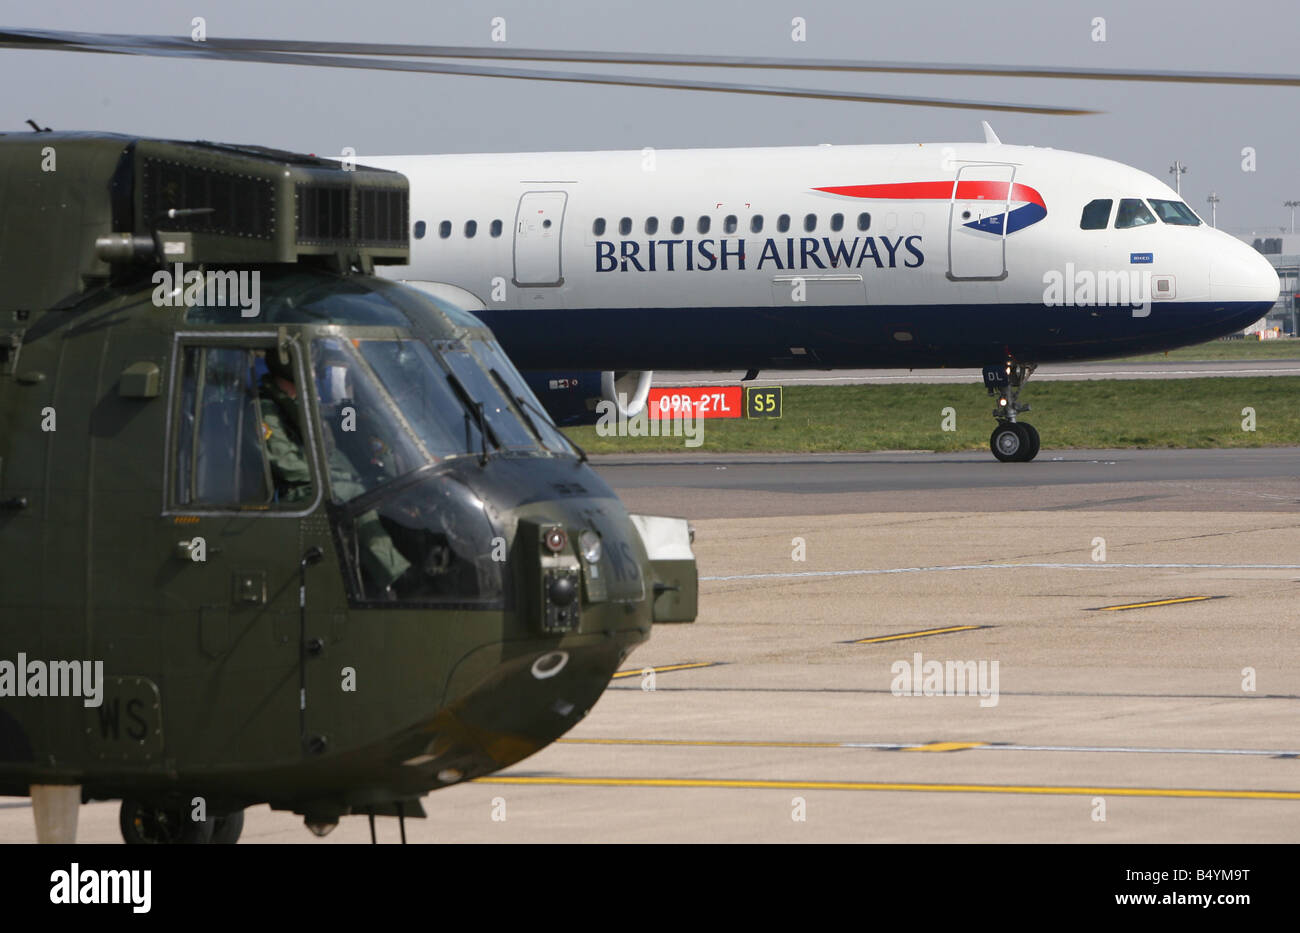 Das Militärpersonal in Rückkehr in die Heimat Iran gefangen gehalten. Landung am Flughafen Heathrow vor der Übermittlung an die Royal Navy Hubschrauber abgebildet. Einmal wieder zurück auf britischem Boden.; 5. April 2007; Stockfoto